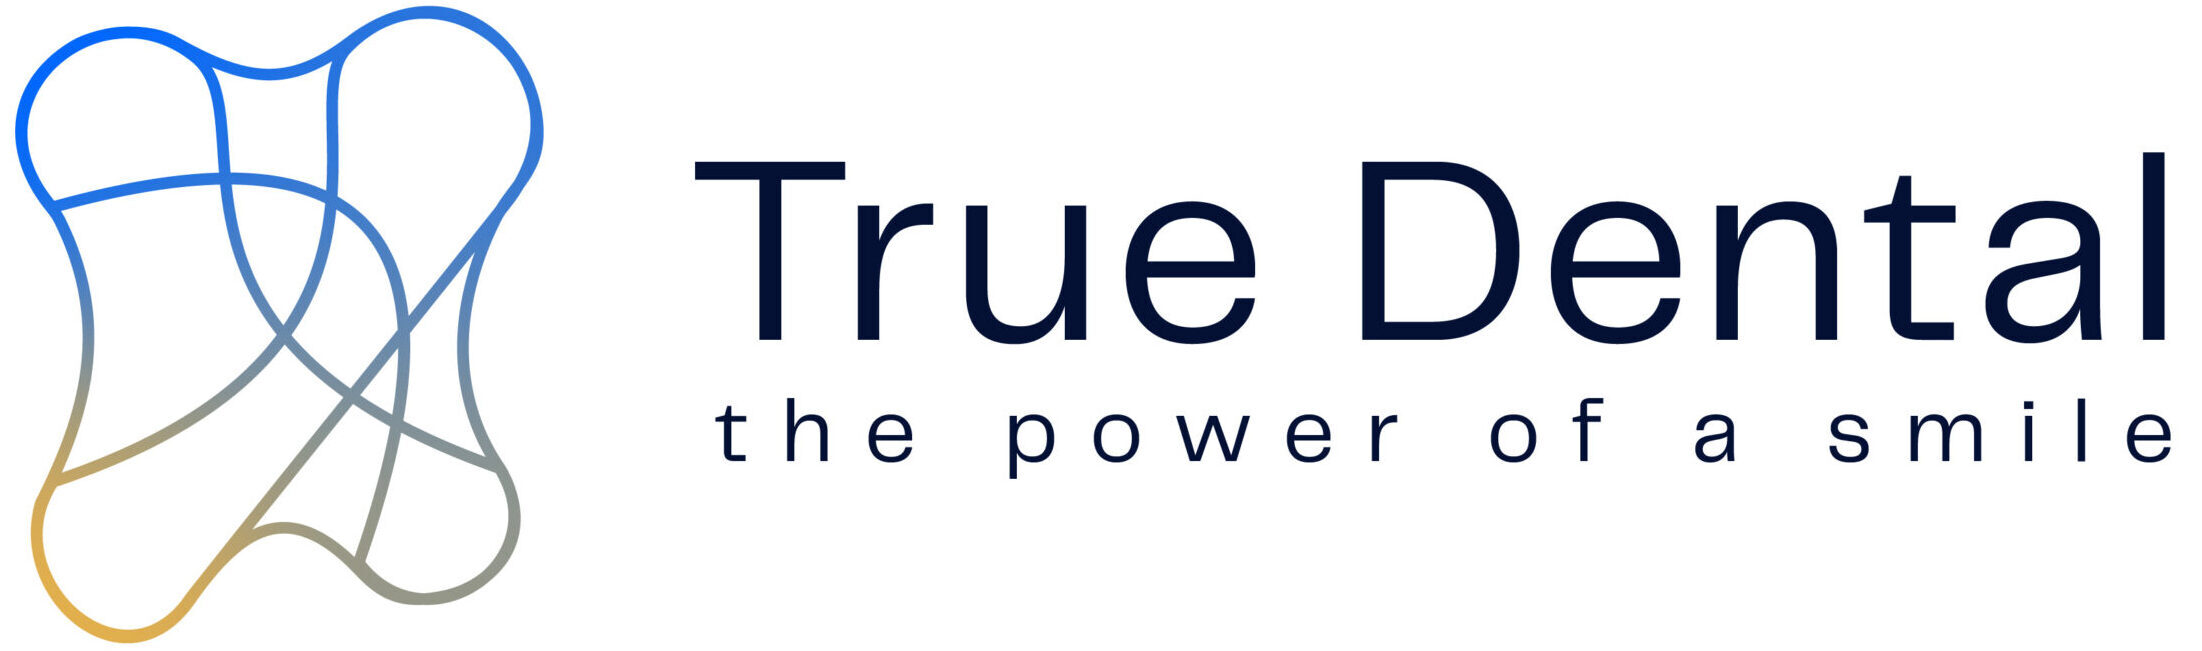 True Dental – CAD/CAM Dental Design Service